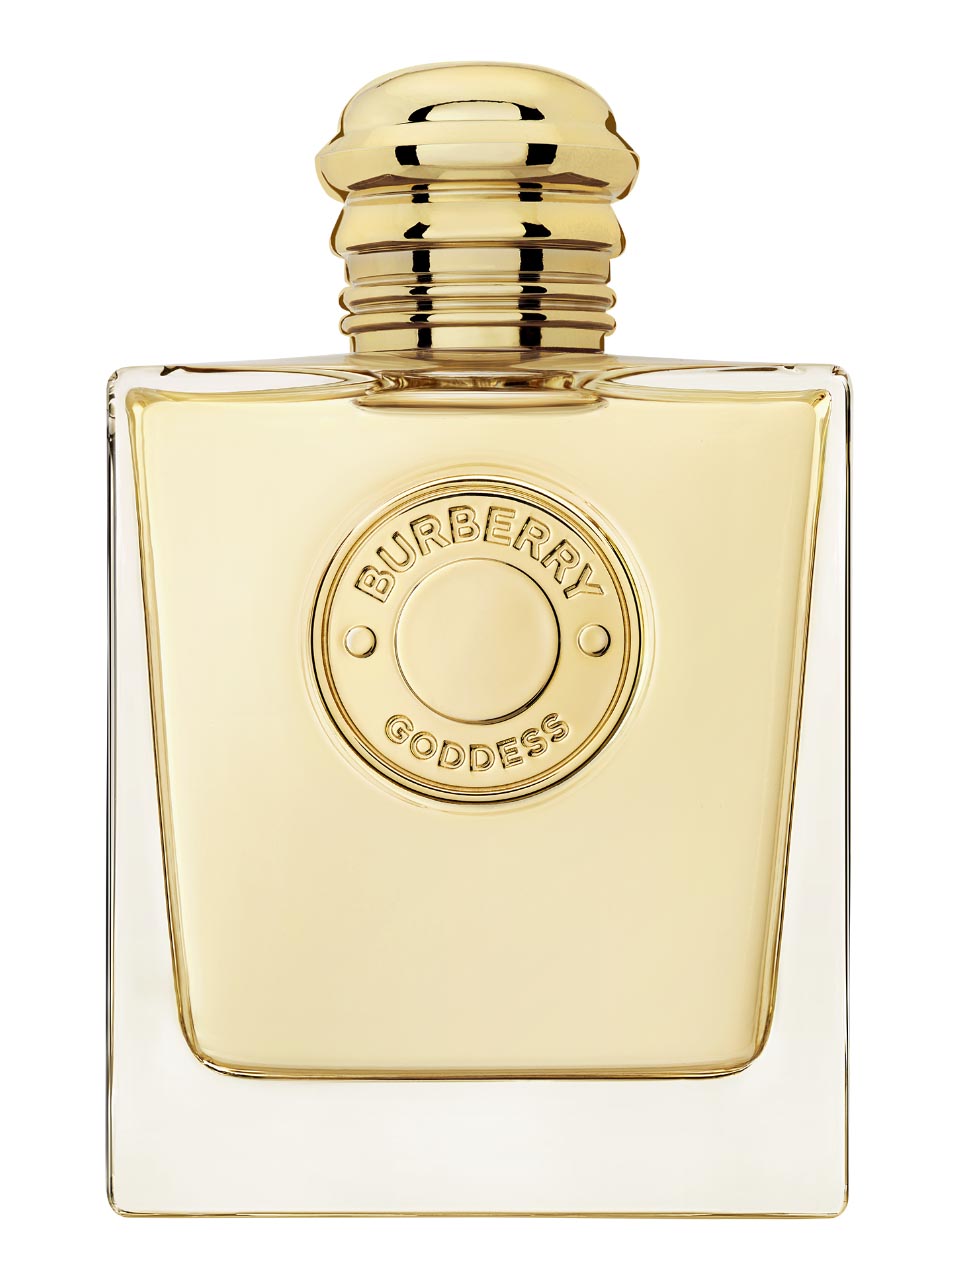 Burberry Goddess Eau de Parfum 100 ml null - onesize - 1